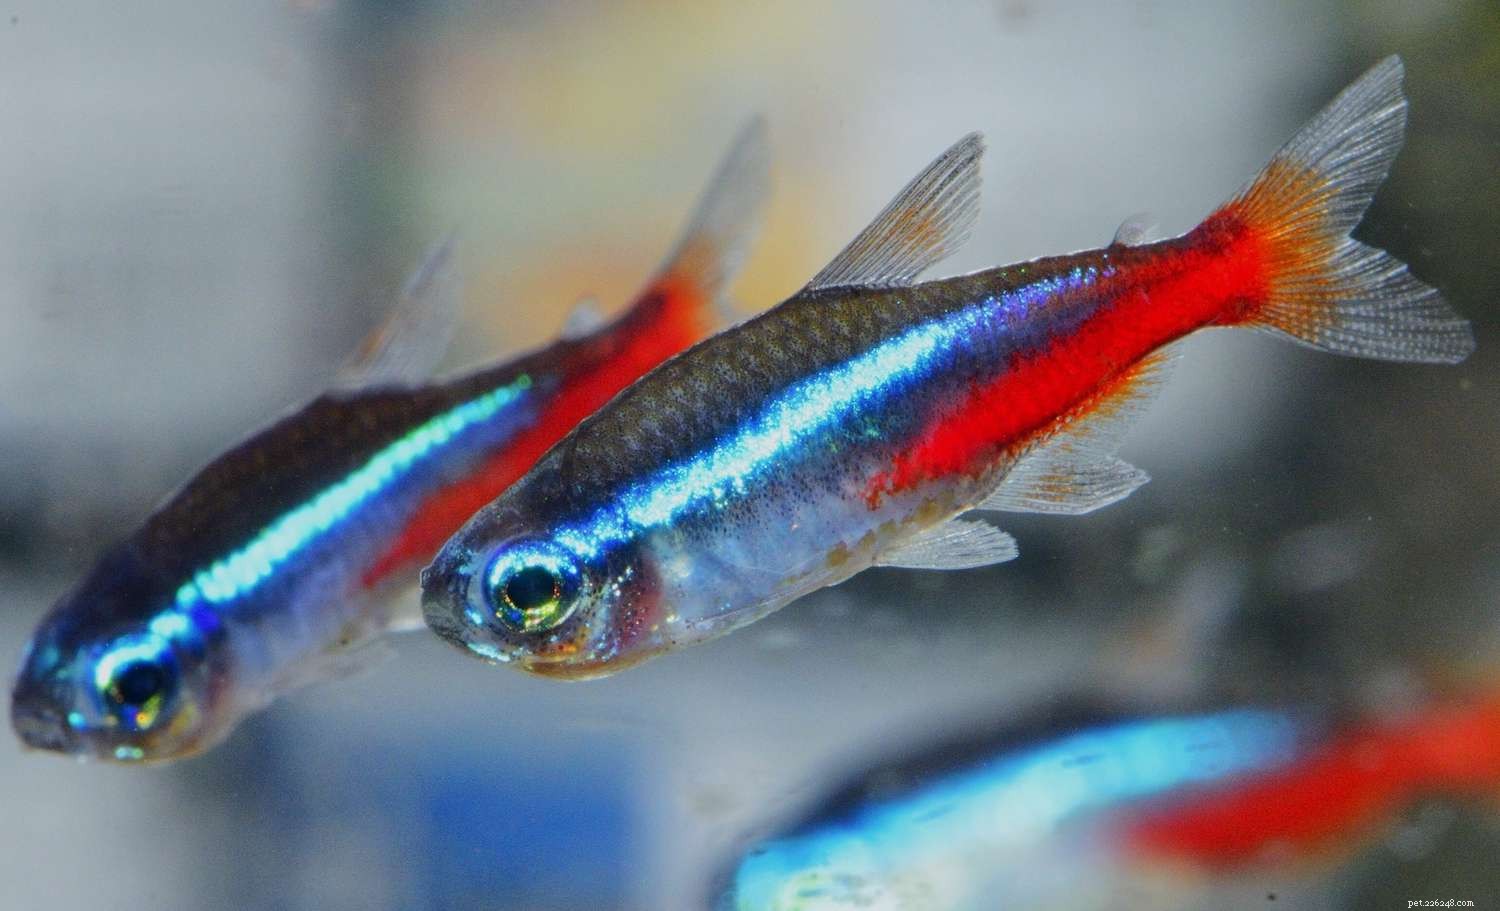 한랭 담수 수족관을 위한 11가지 최고의 물고기 종